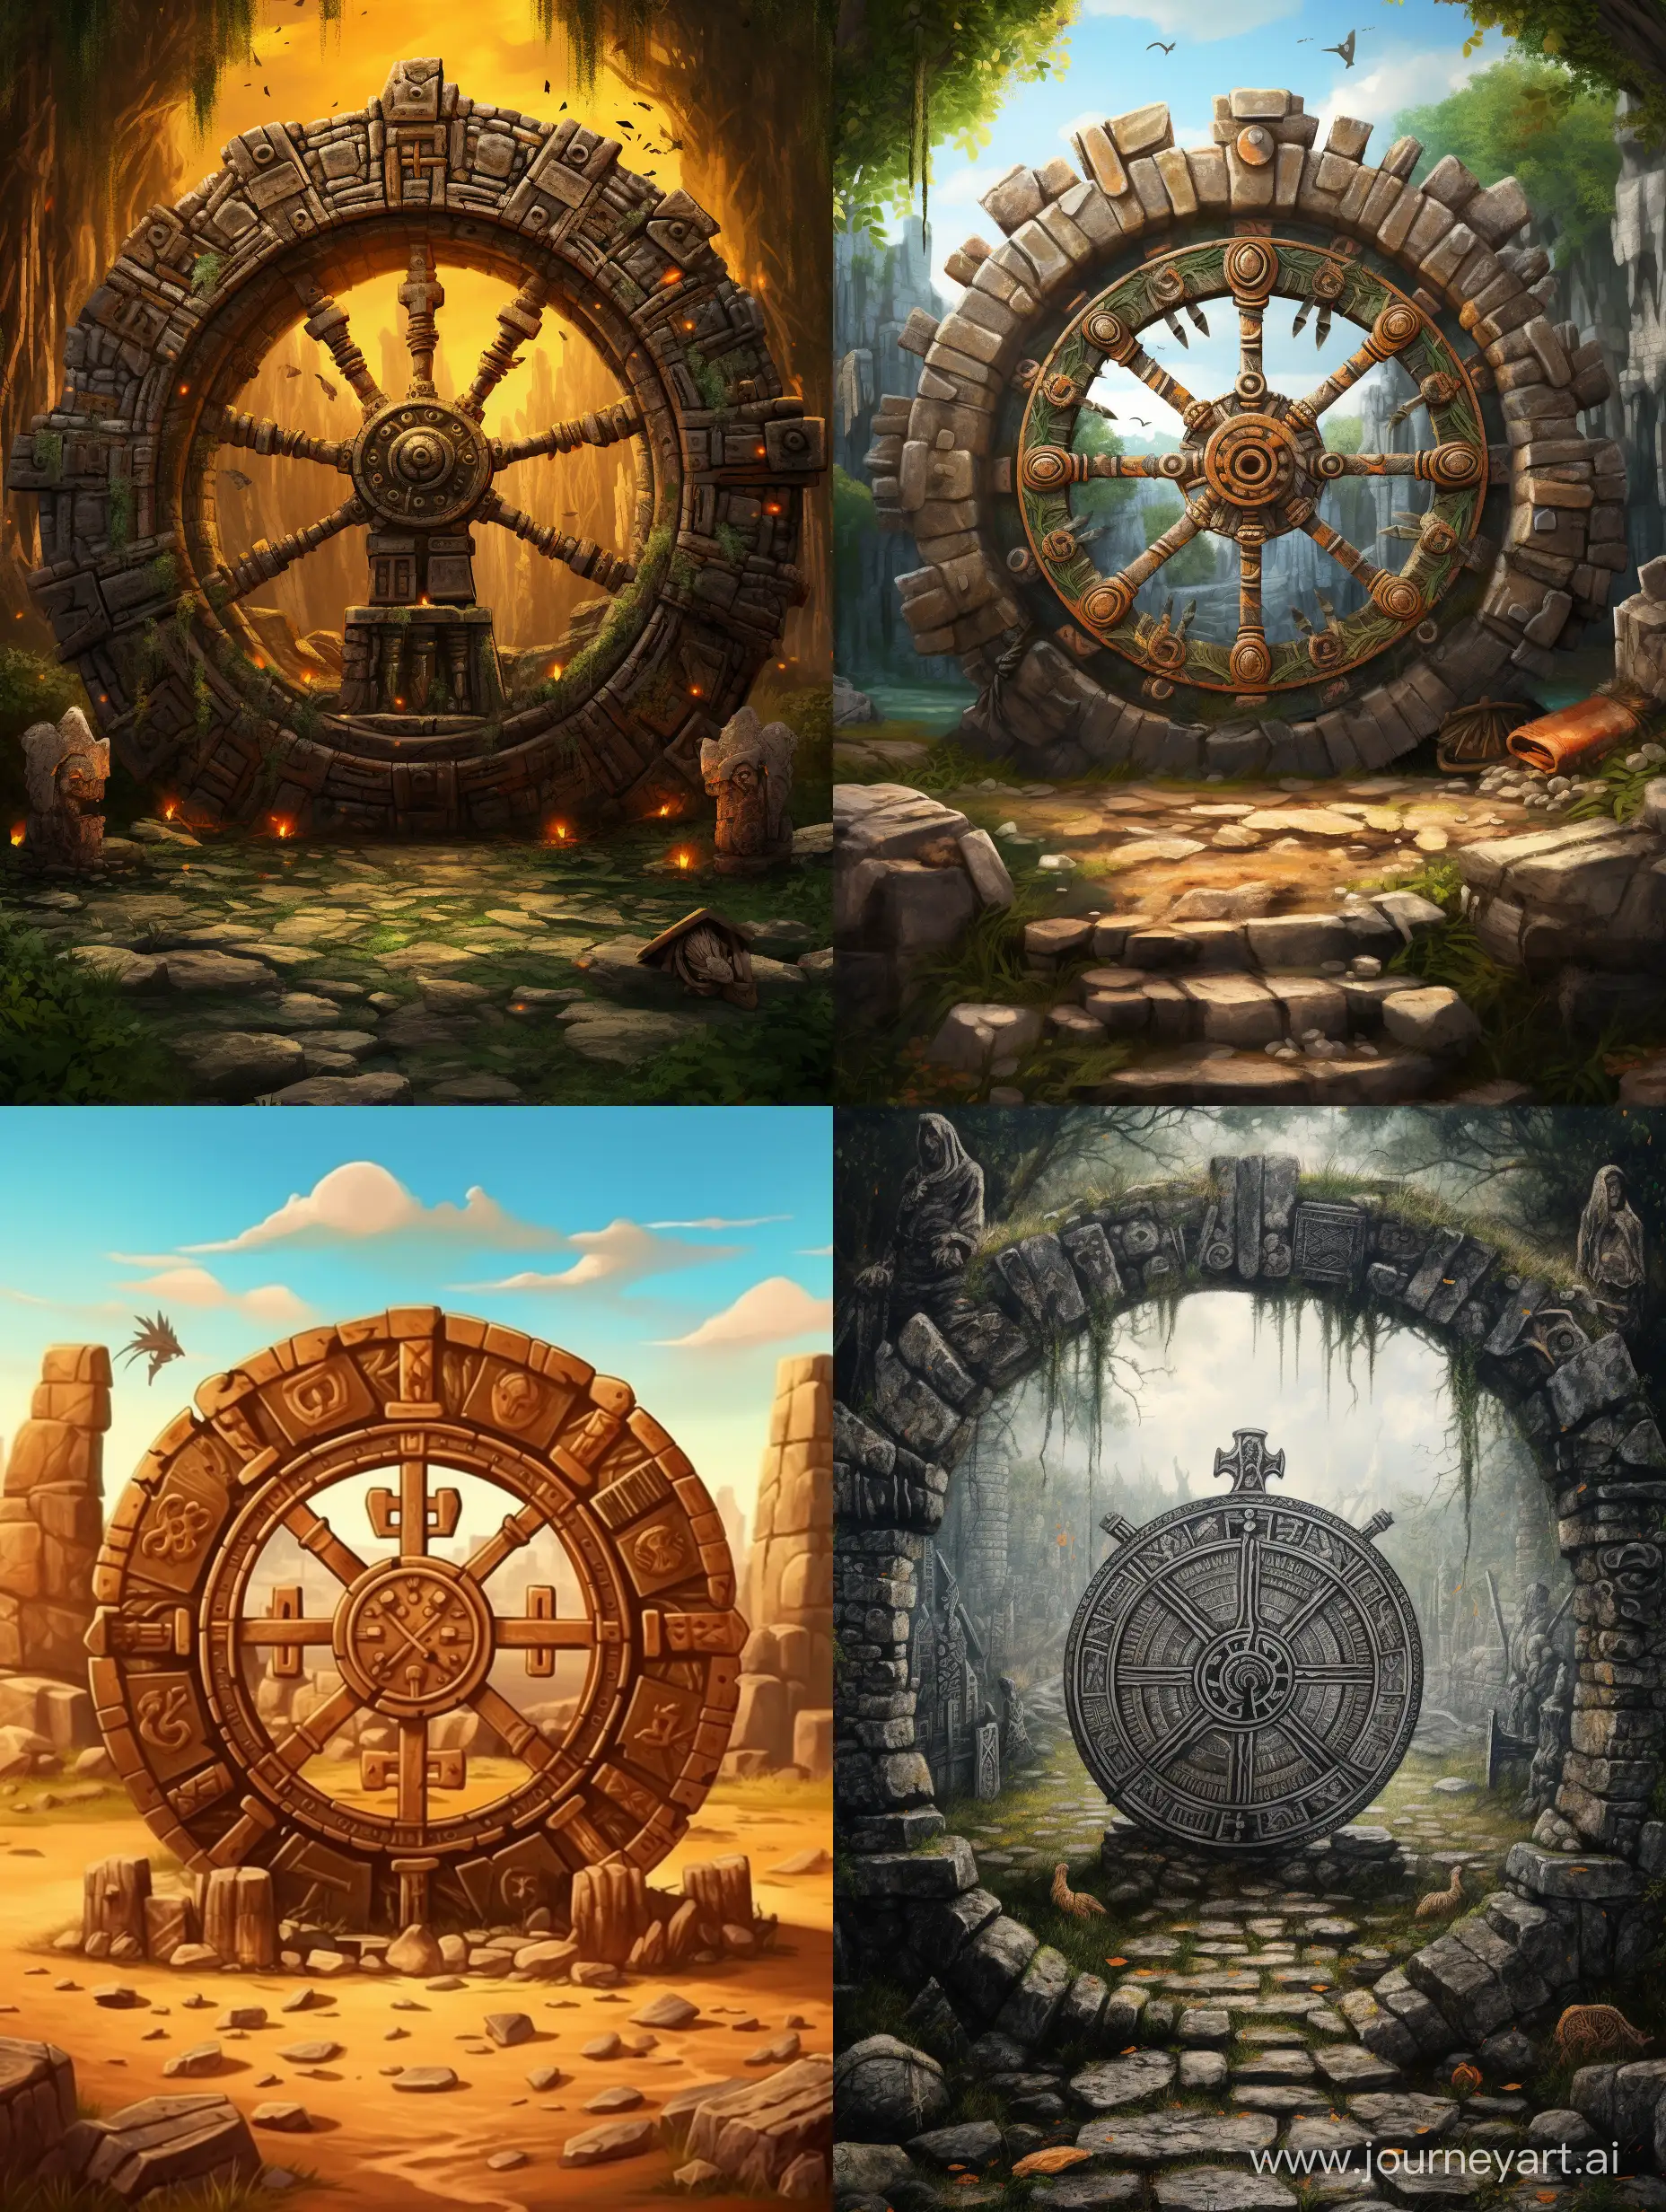 Древнее каменное колесо с рунами по кругу, каменный круг с древними символами по краям круга, качественный высокодетализированный рисунок, яркость, красочность, стирающаяся грань между реальностью и фантазией